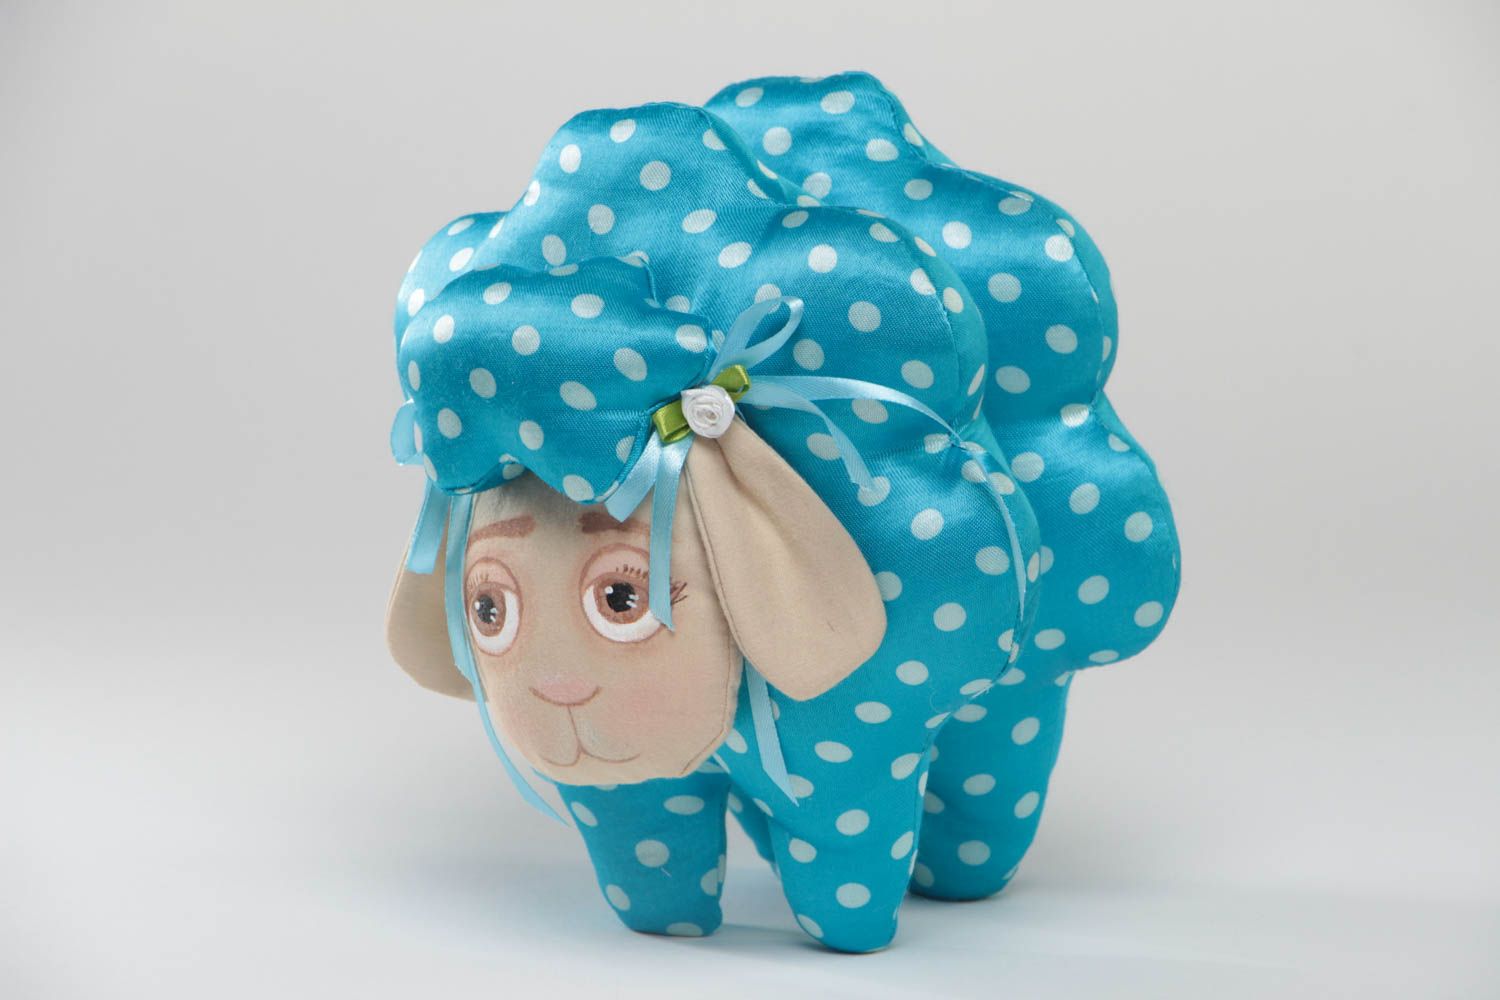 Мягкая игрушка овечка из ткани ручной работы детская красивая голубая в горох фото 2